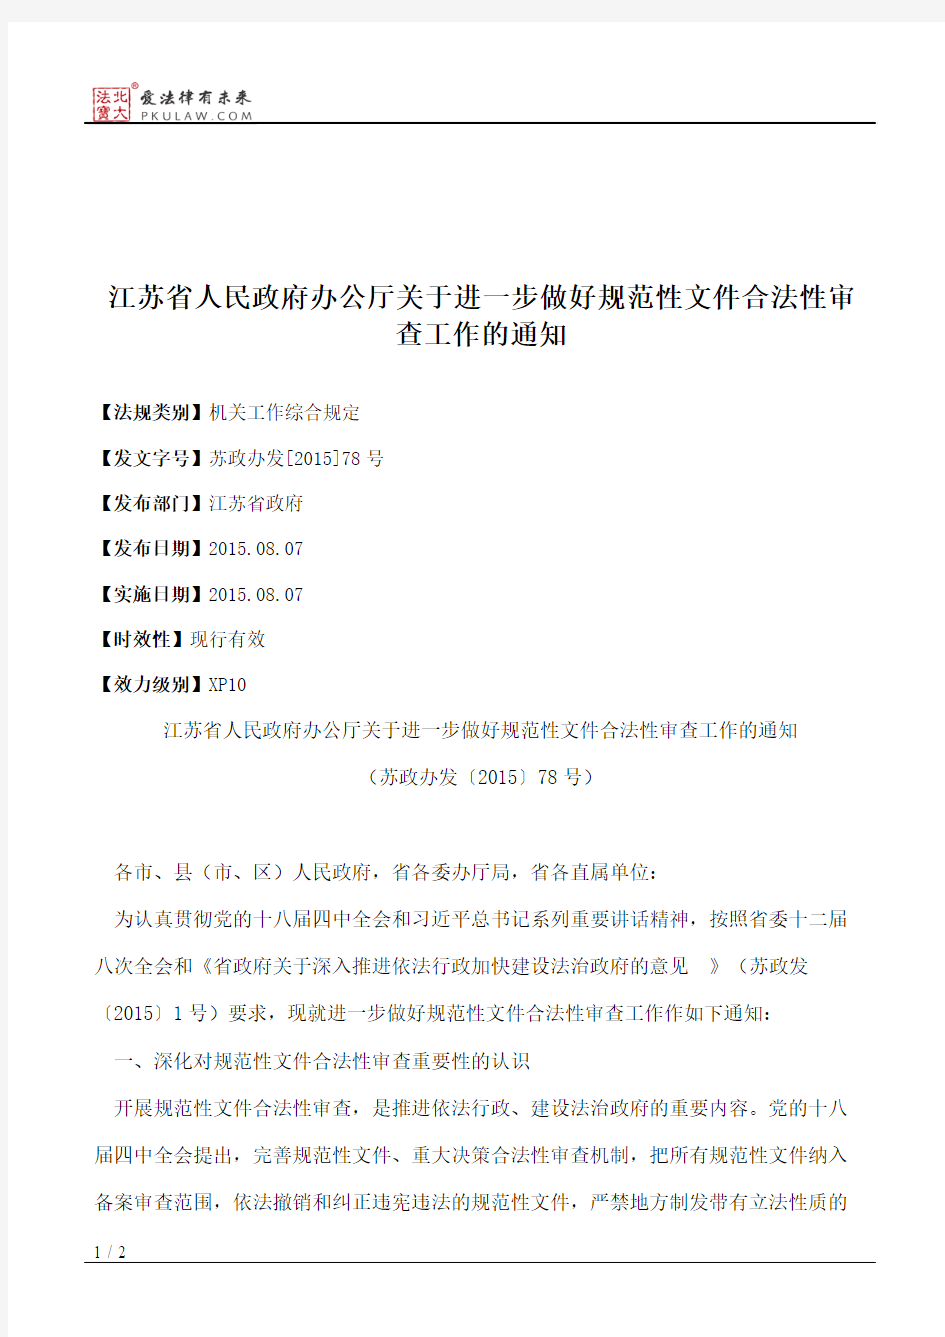 江苏省人民政府办公厅关于进一步做好规范性文件合法性审查工作的通知